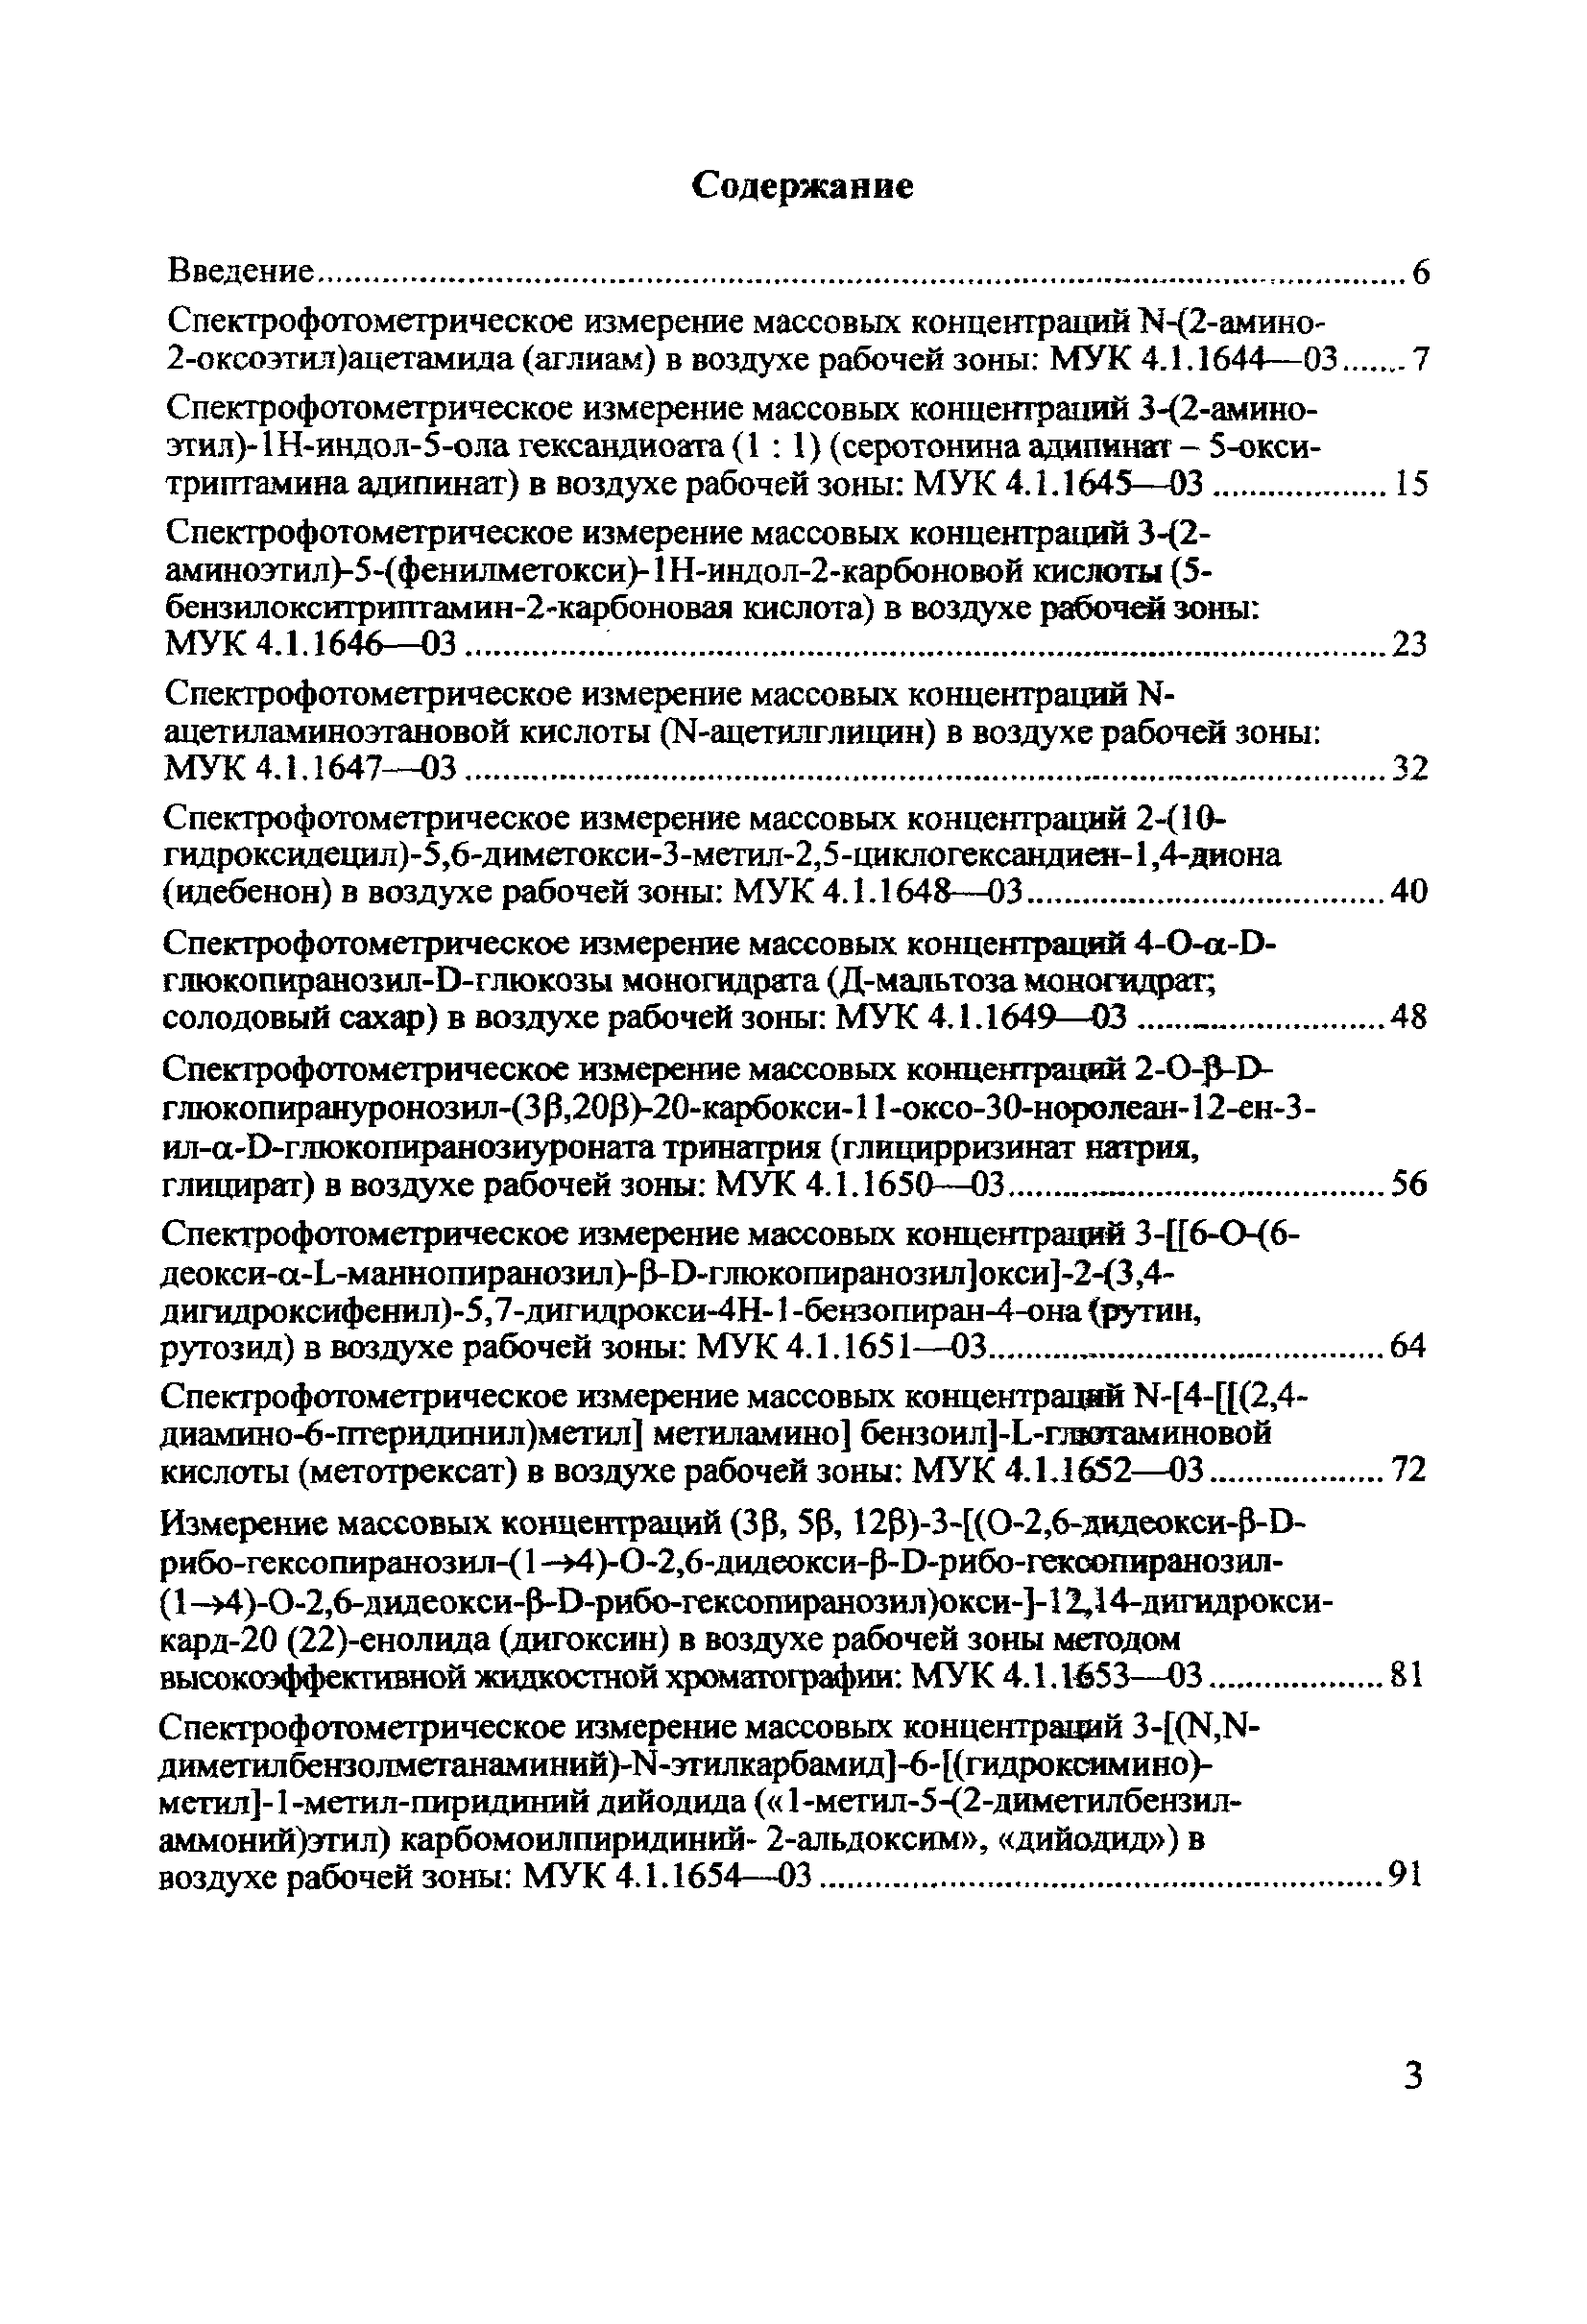 МУК 4.1.1658-03